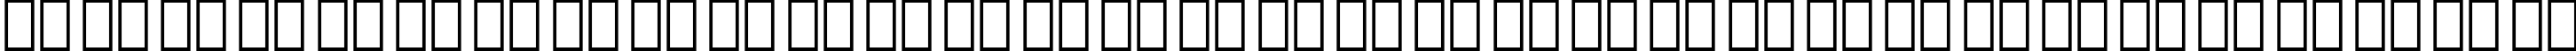 Пример написания русского алфавита шрифтом Huxley Vertical BT